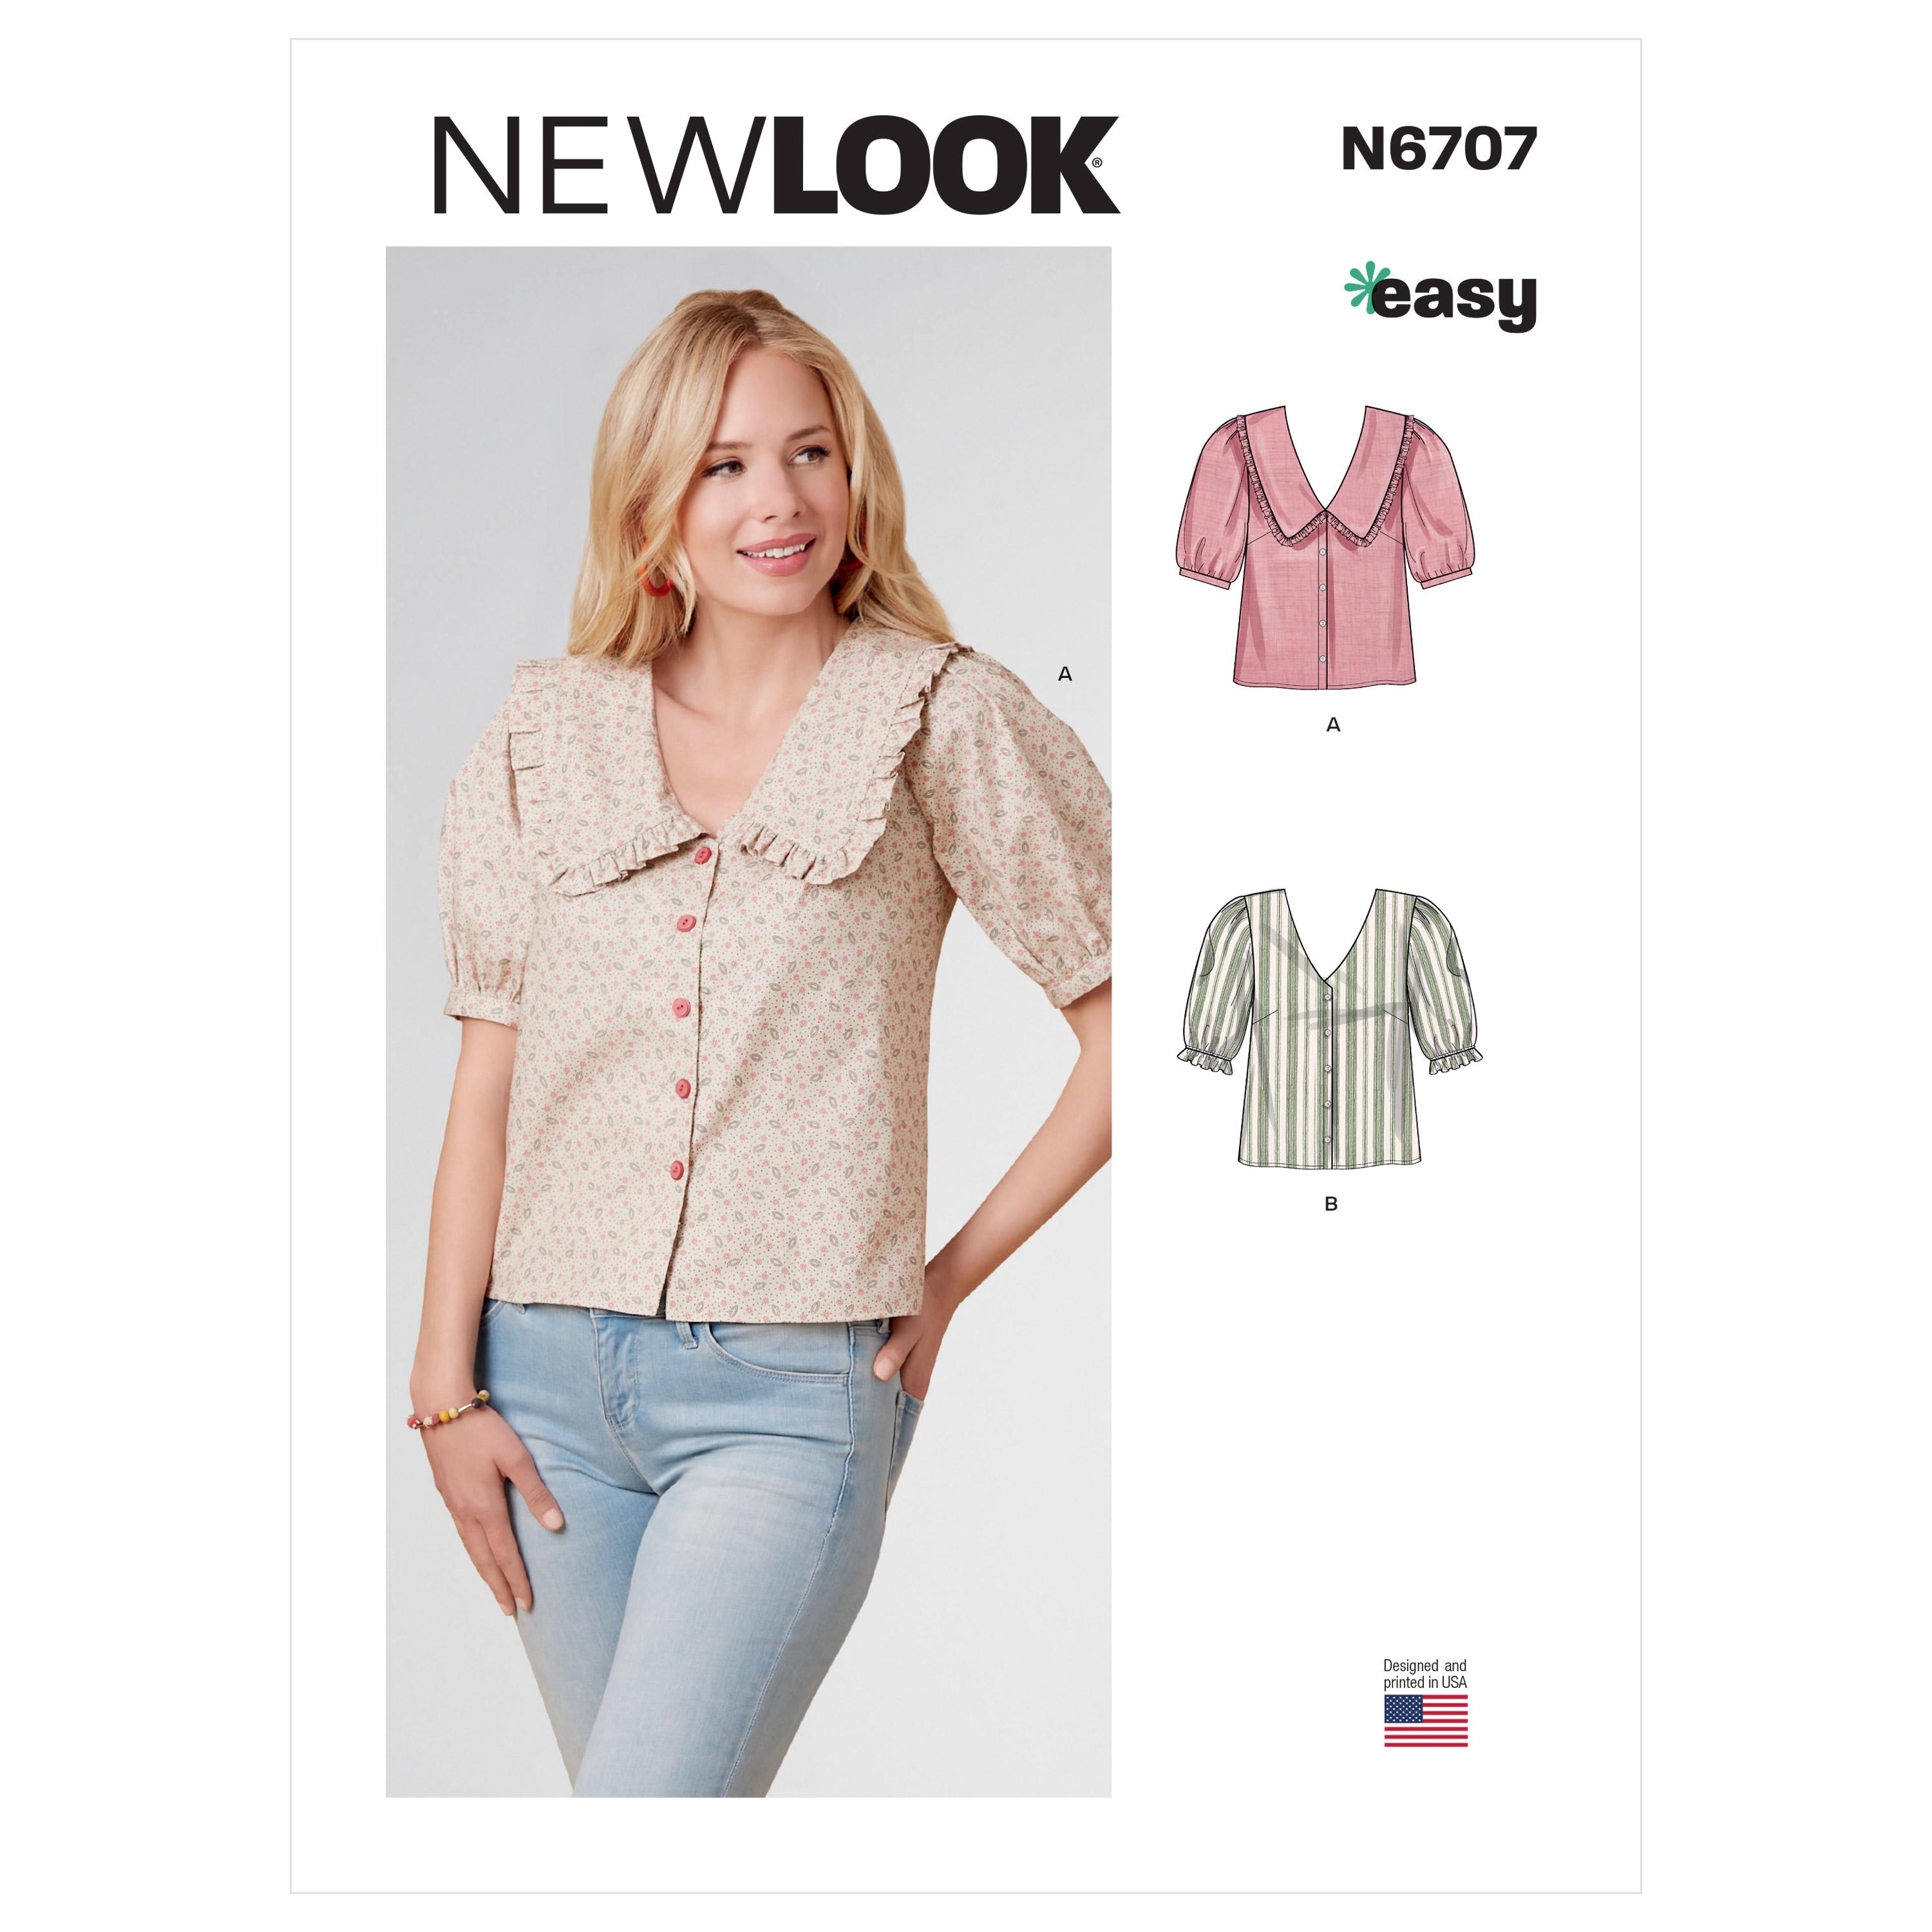 New Look Sewing Pattern N6707 Misses' Tops